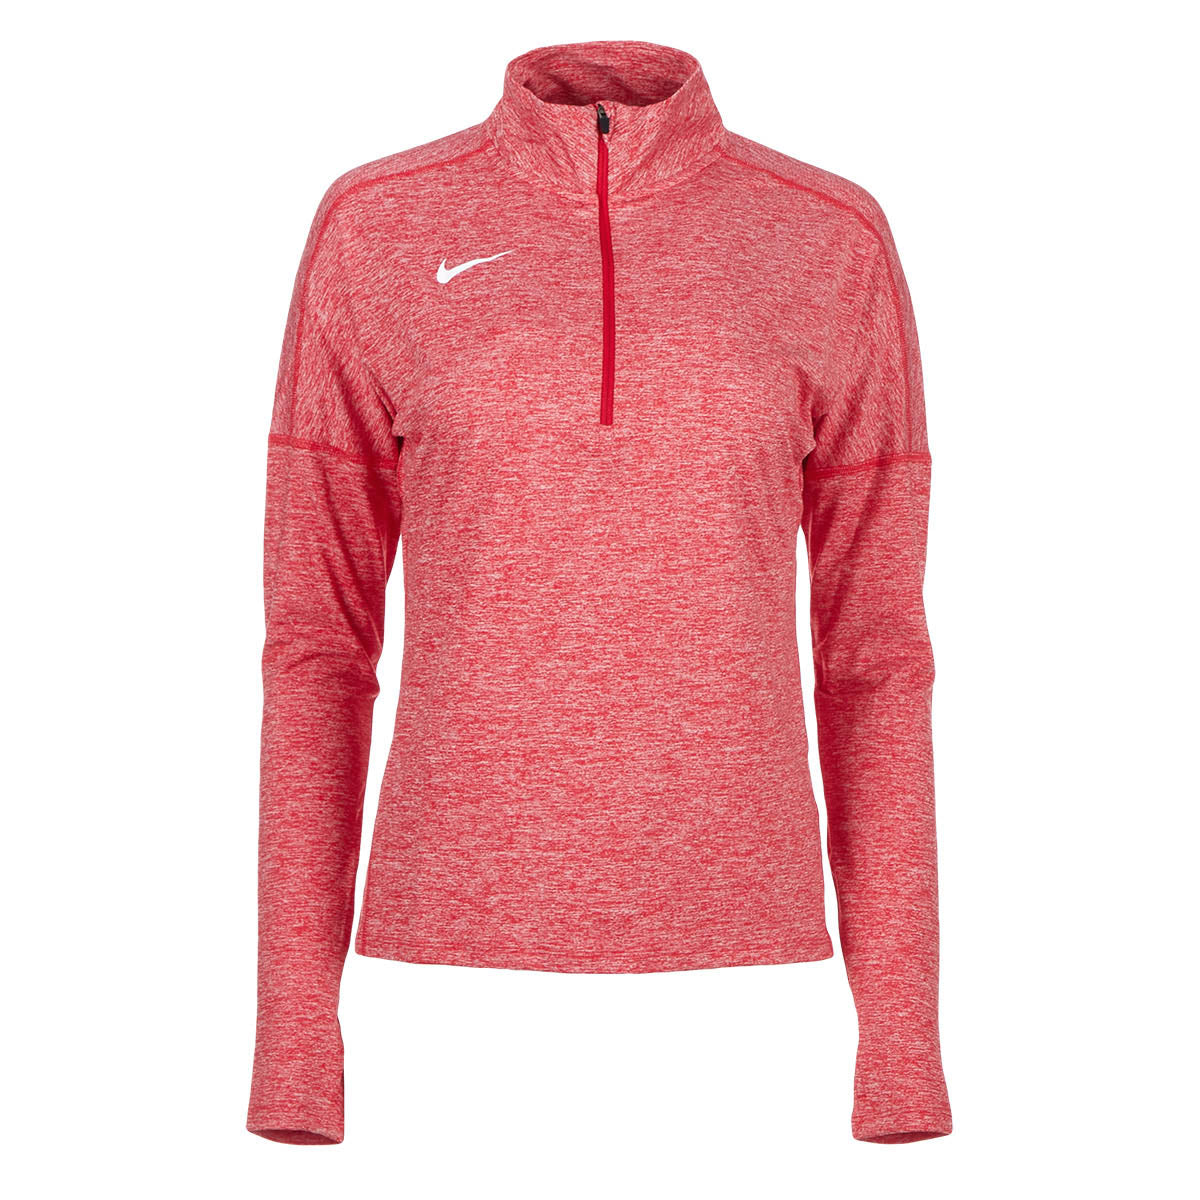 Nike Women's Team Half Zip Top PROOZY